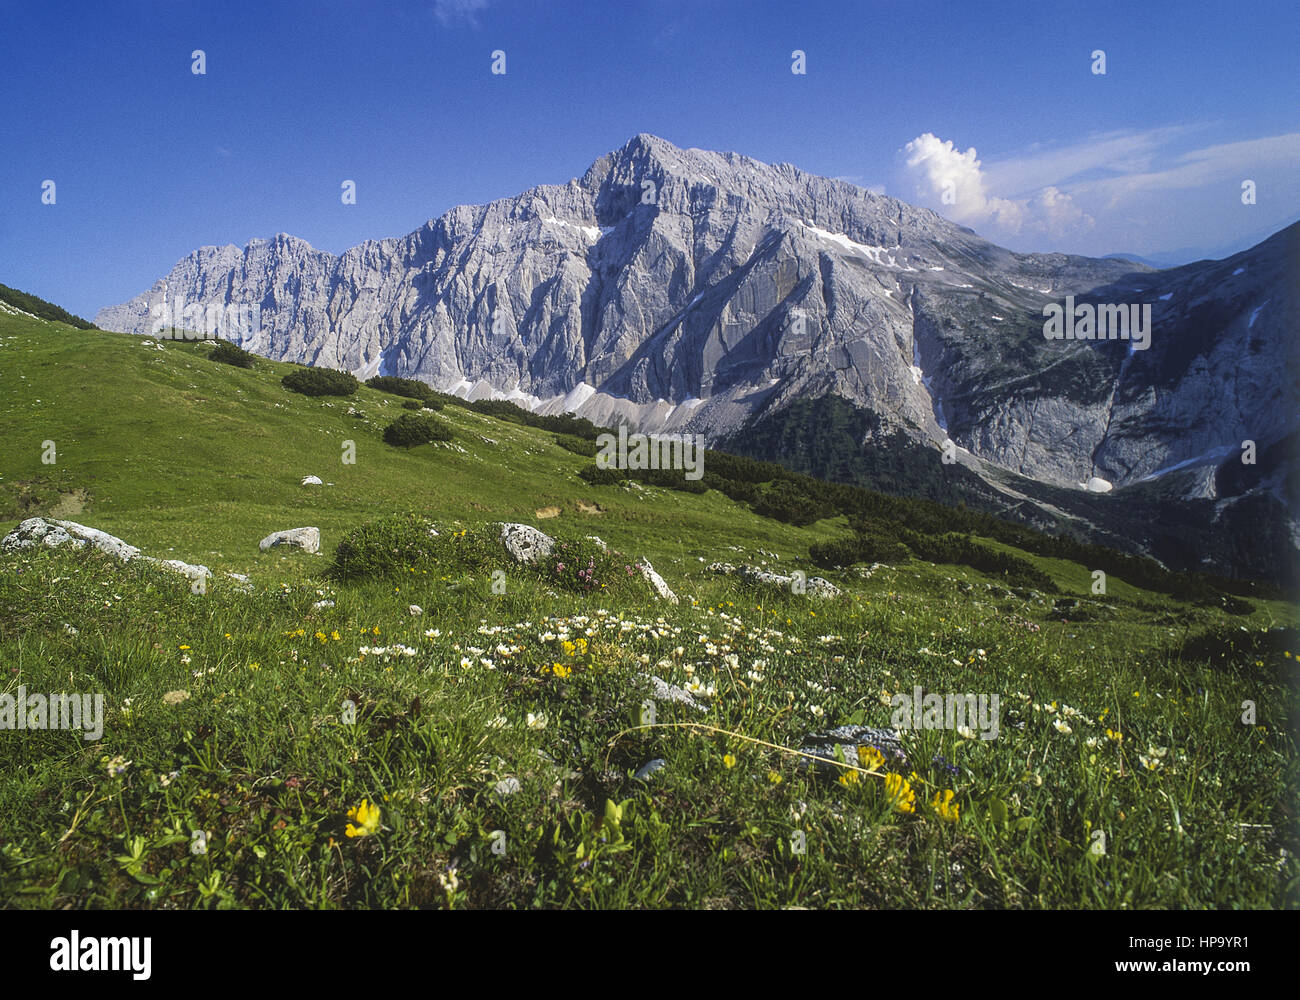 Bergwiese vor Karwendelgebirge, Speckkarspitze, Tirol, Oesterreich Stock Photo